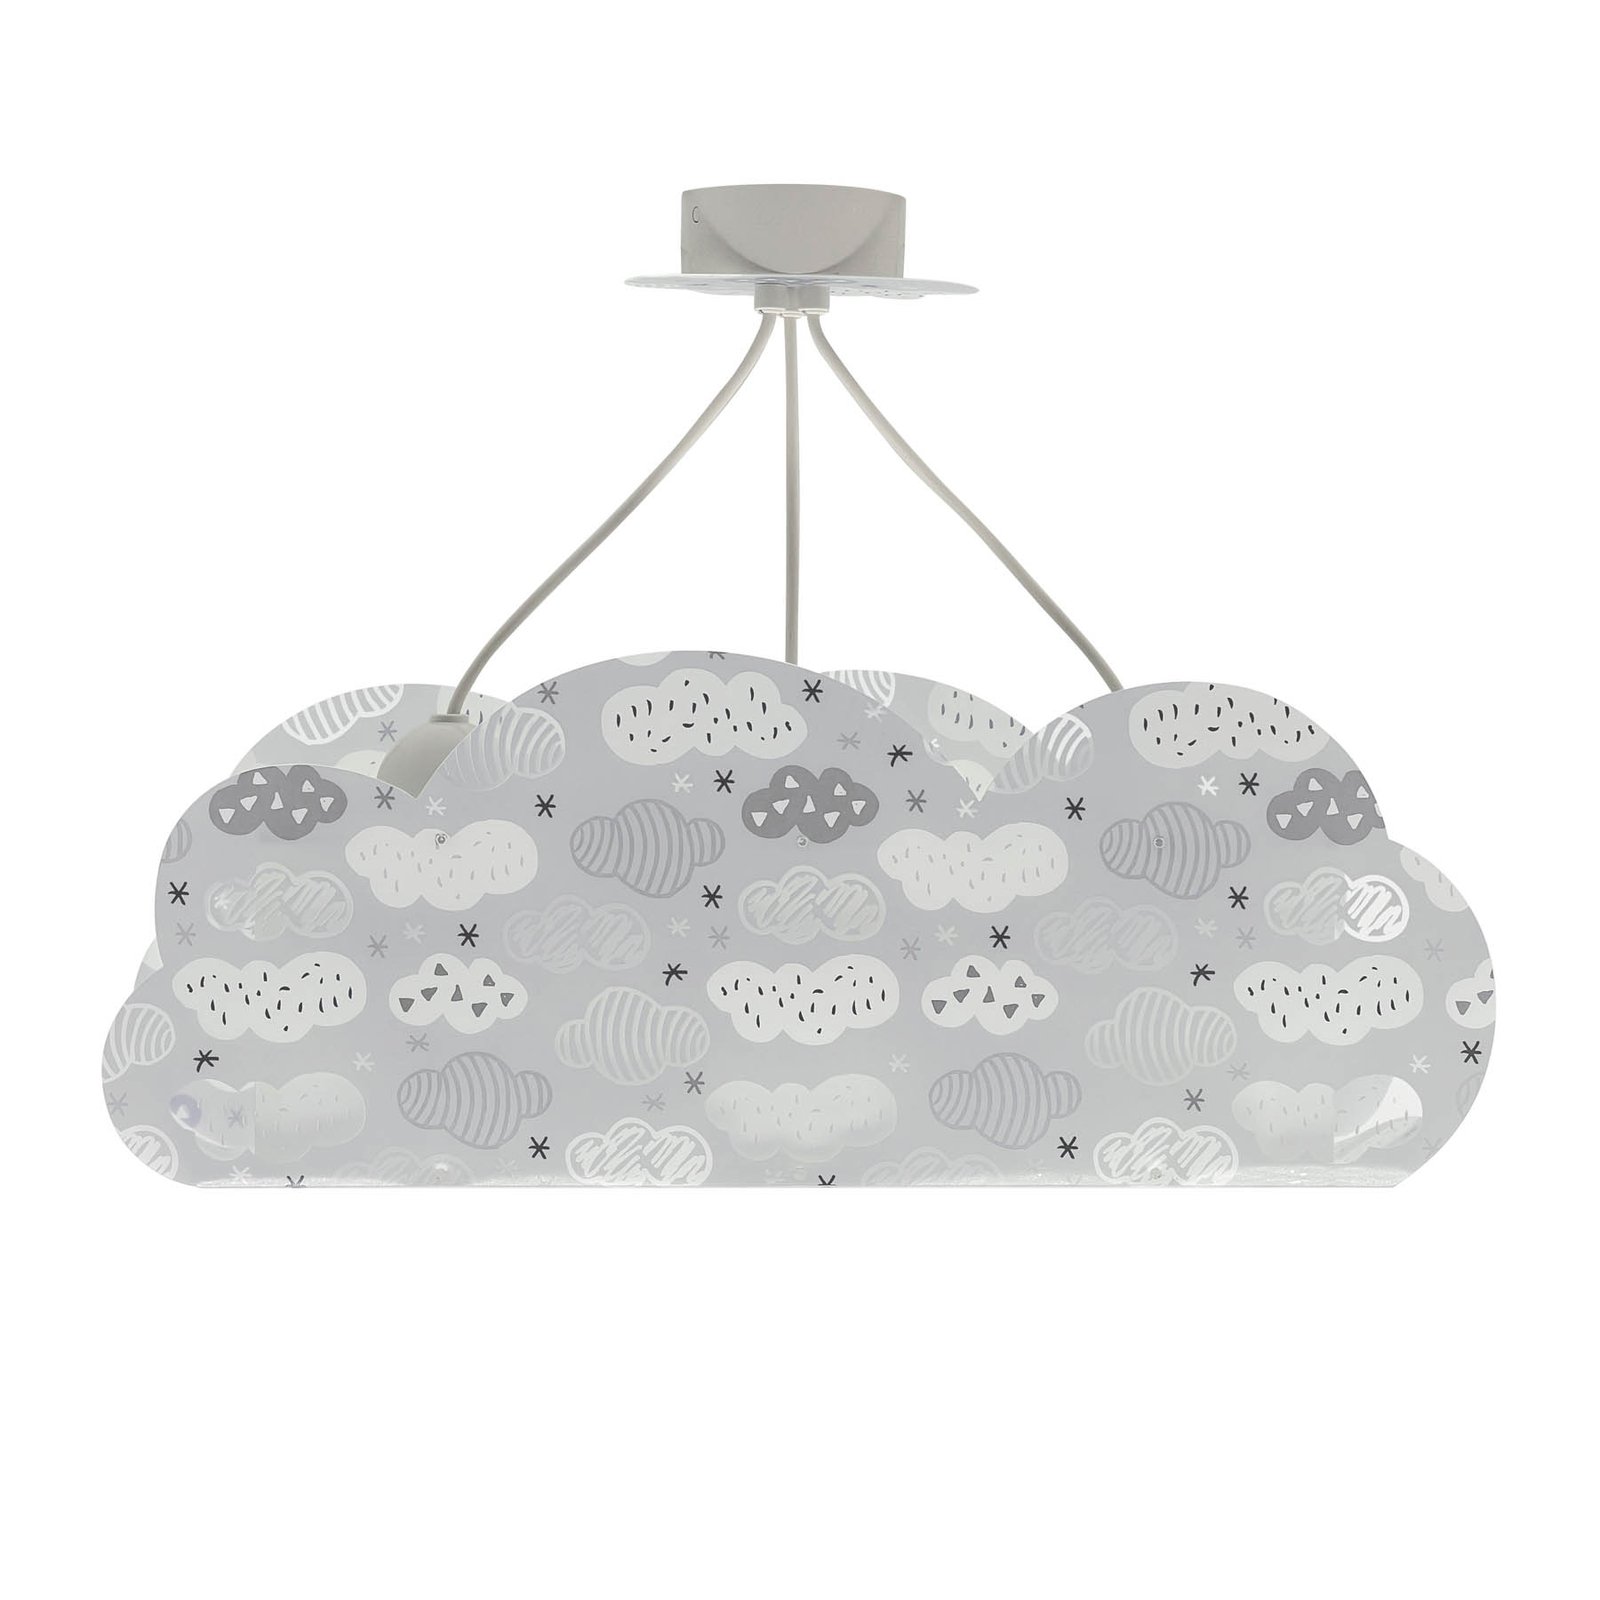 Hanglamp Cloud Grey in de vorm van een wolk, grijs